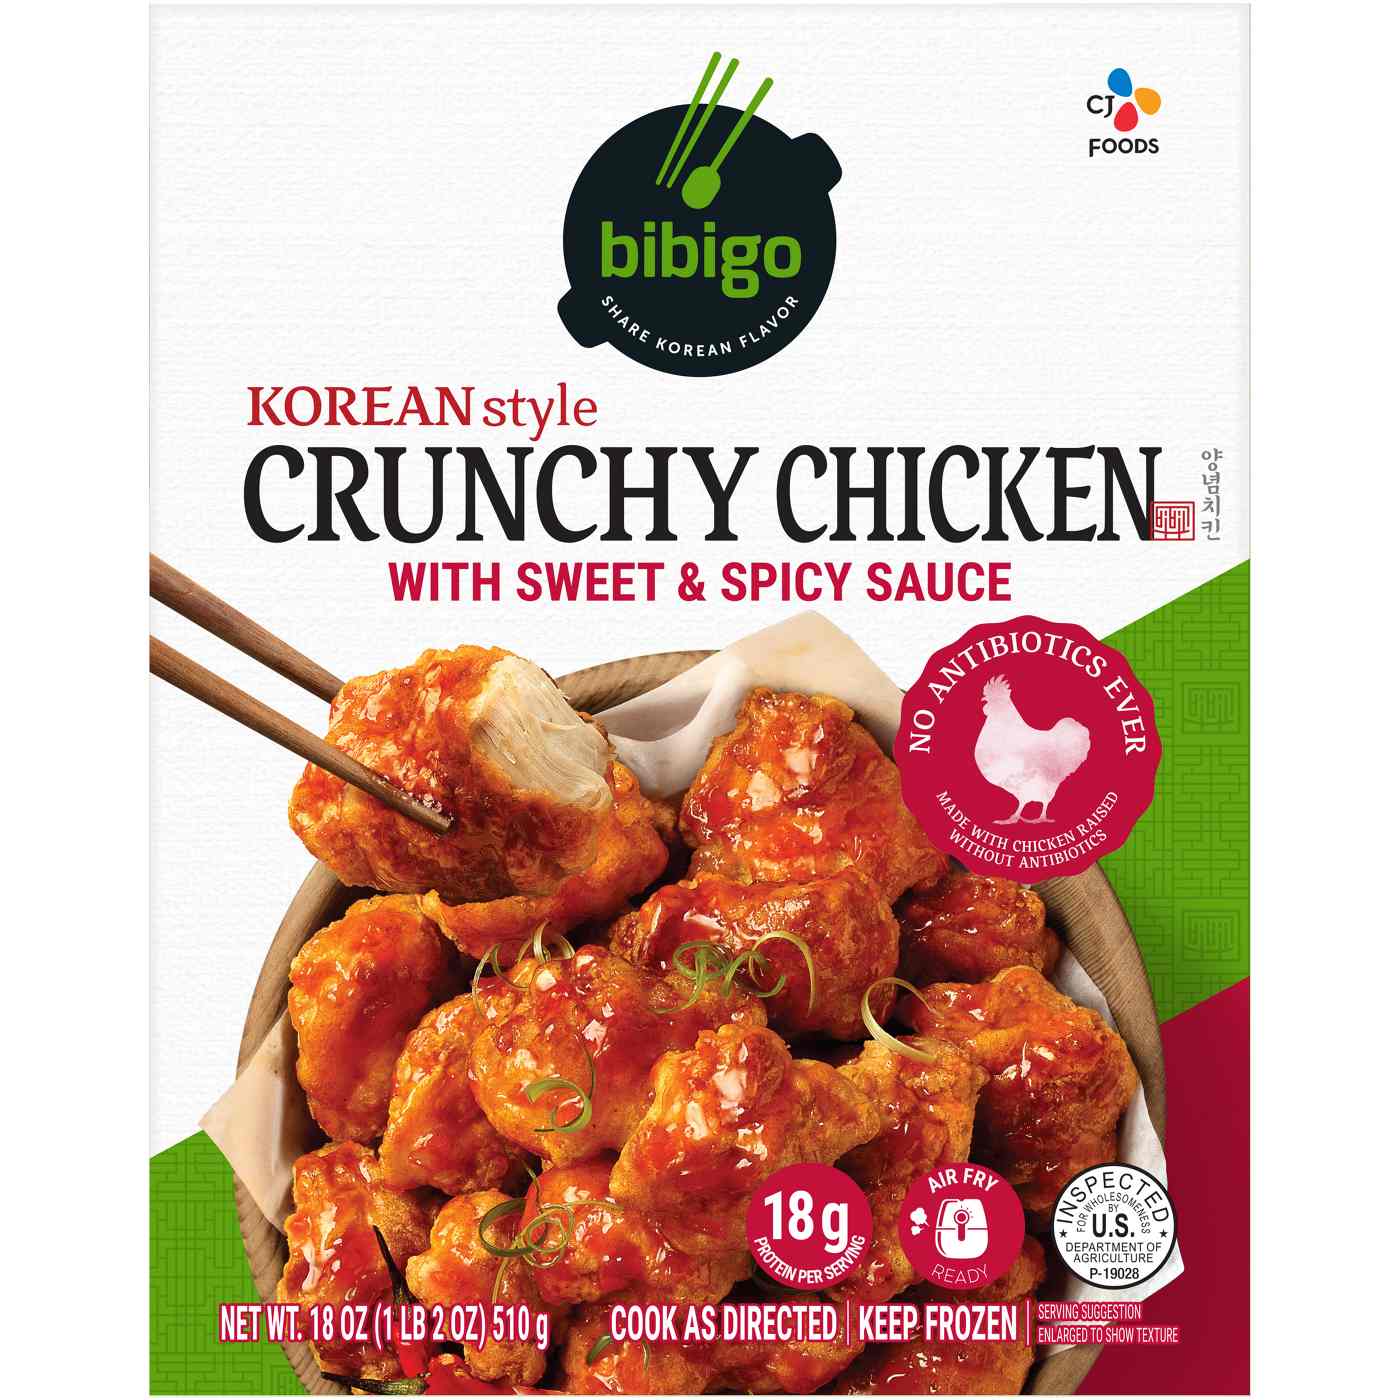 Bibigo Frozen Korean-Style Crunchy Chicken; image 1 of 5